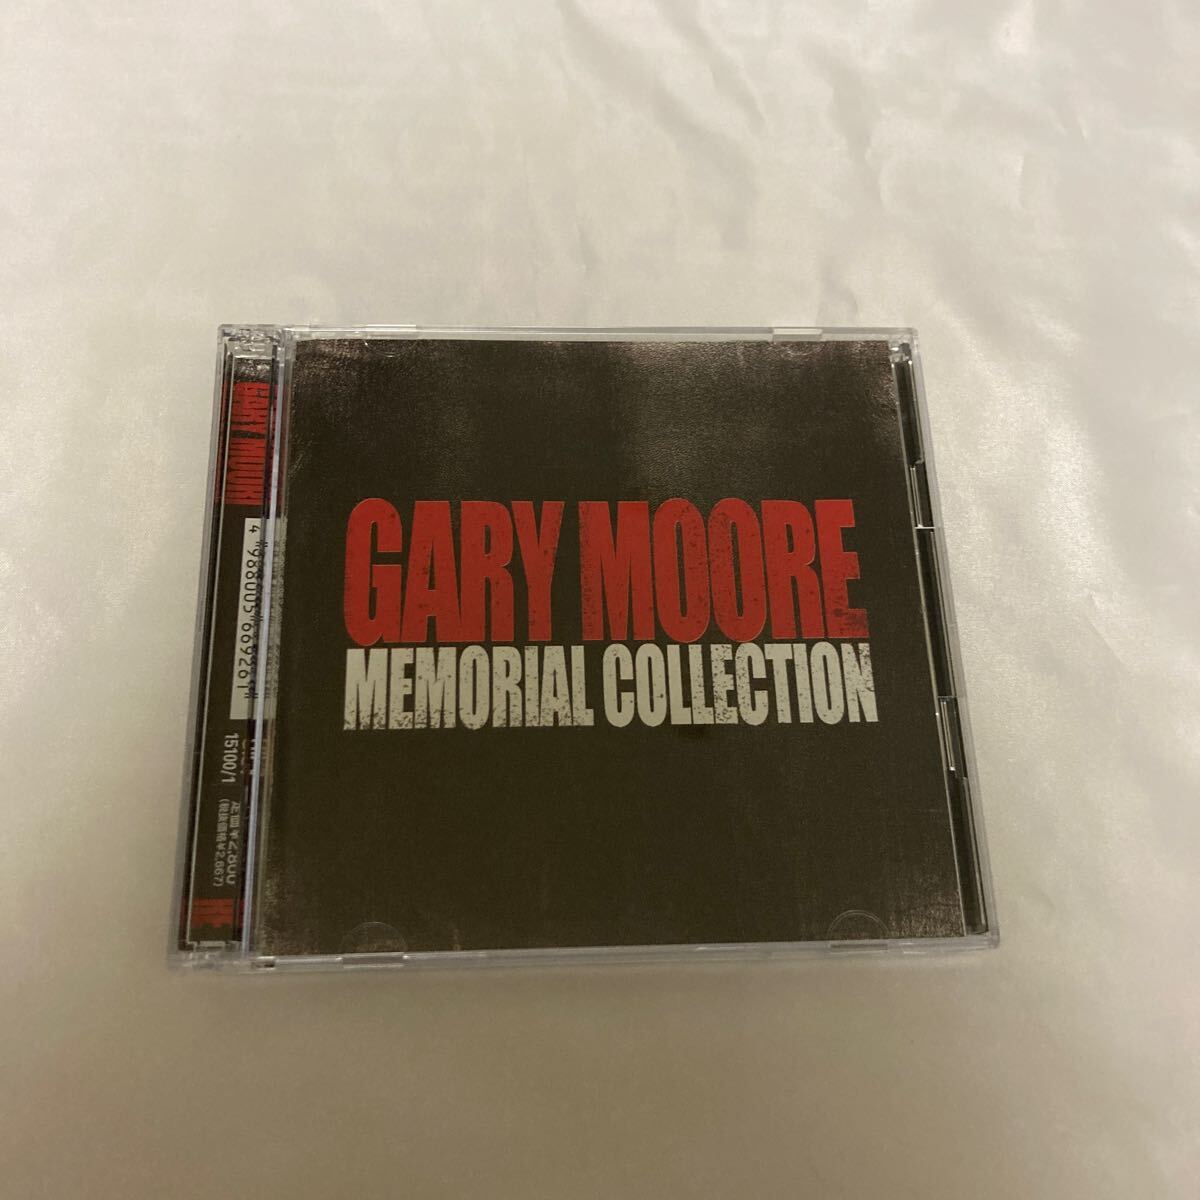 ゲイリー・ムーア・メモリアル・コレクション GARY MOORE 2CDの画像1